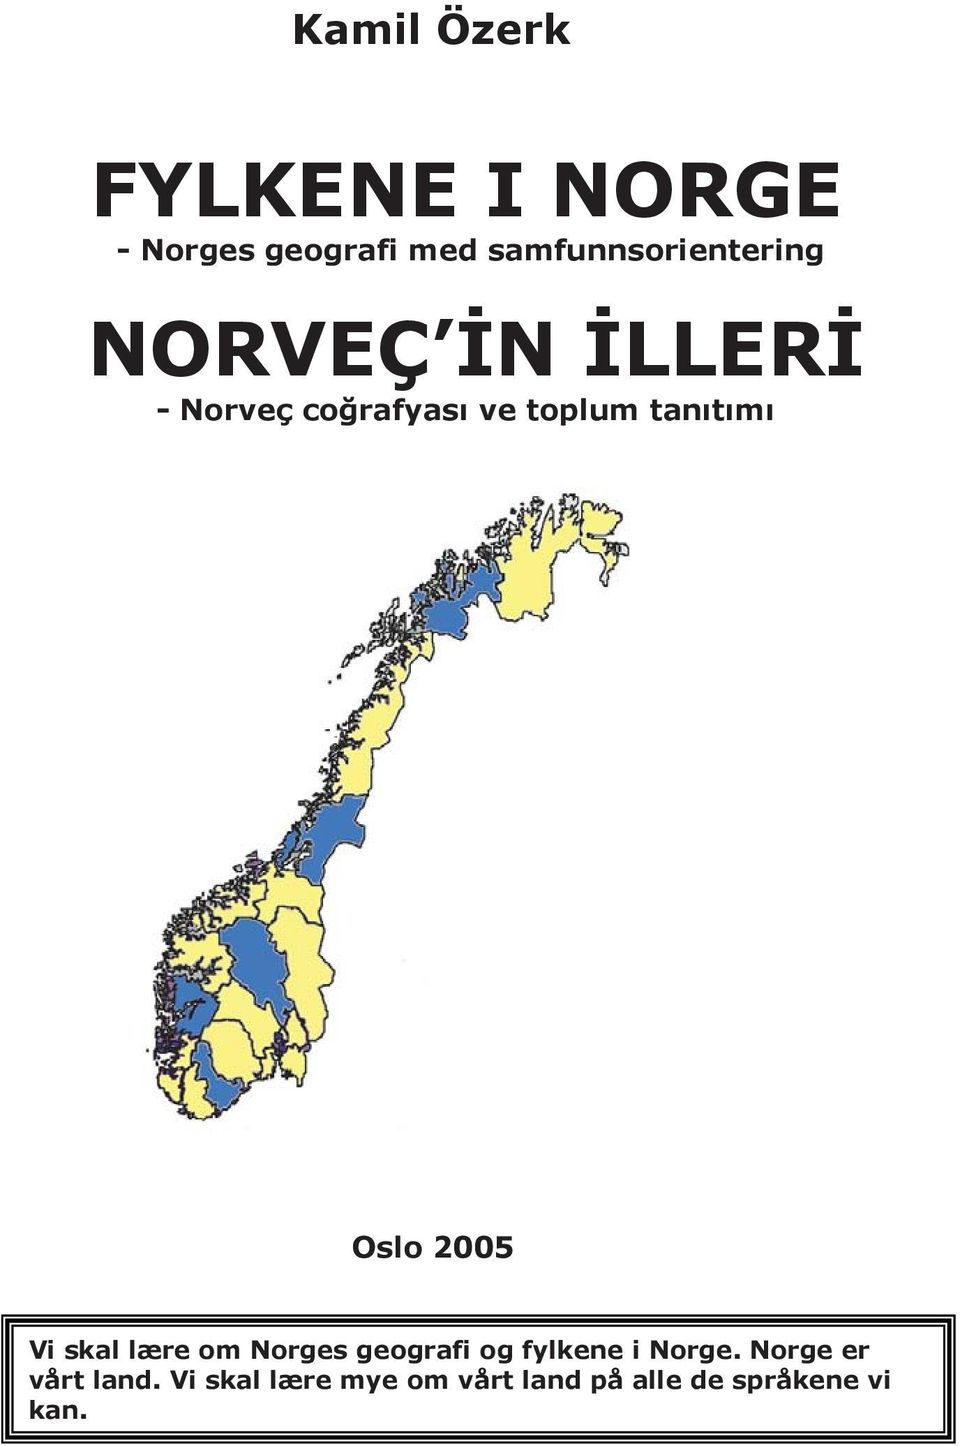 tan t m Oslo 2005 Vi skal lære om Norges geografi og fylkene i